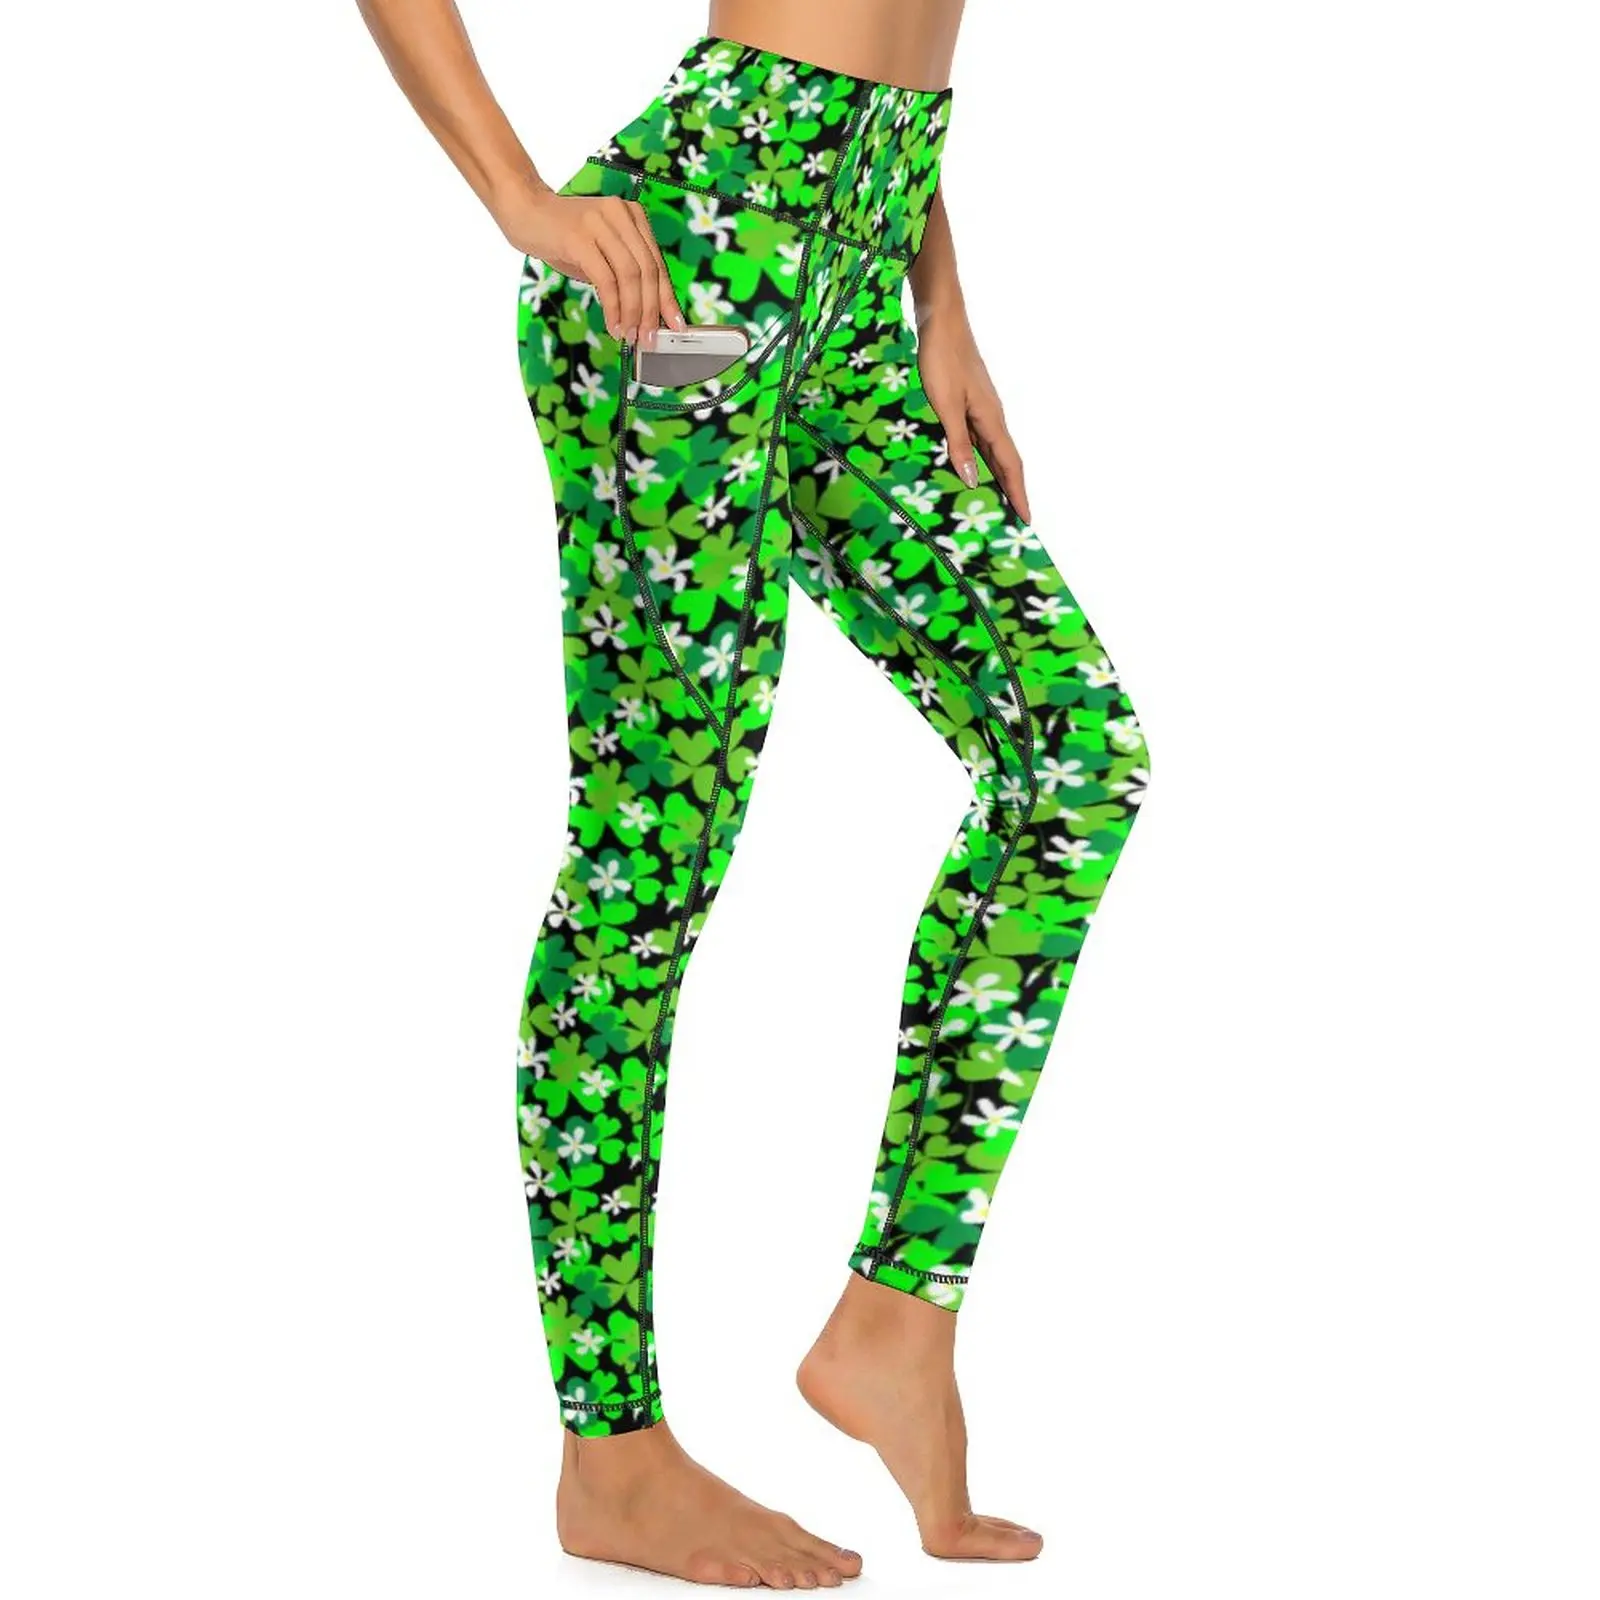 

Леггинсы Lucky Shamrock с принтом зеленых листьев, штаны для йоги с высокой талией, дышащие спортивные Леггинсы для фитнеса и бега